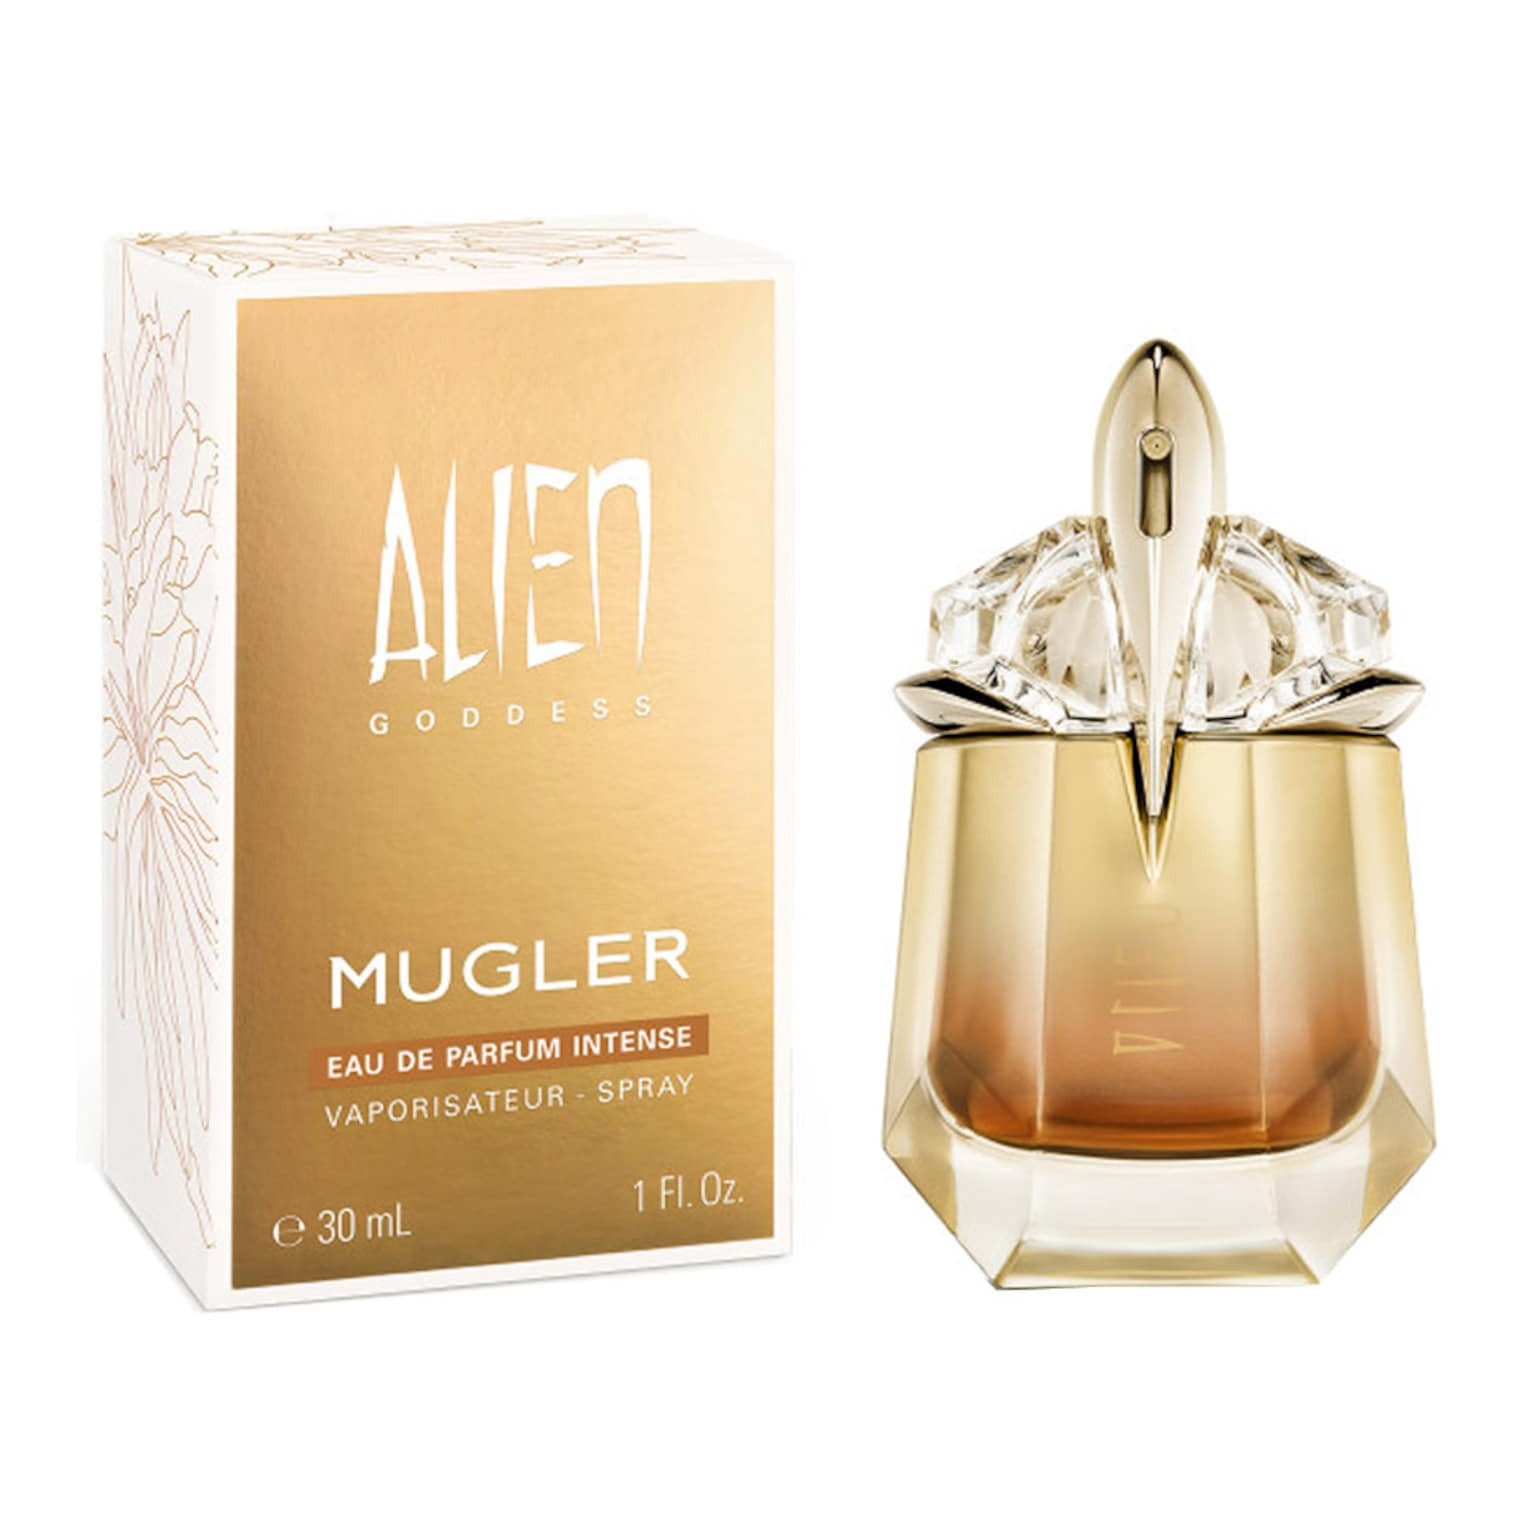 парфюмерная вода mugler recargable alien goddess 90 мл Парфюмерная вода Mugler Alien Goddess Intense, 30 мл